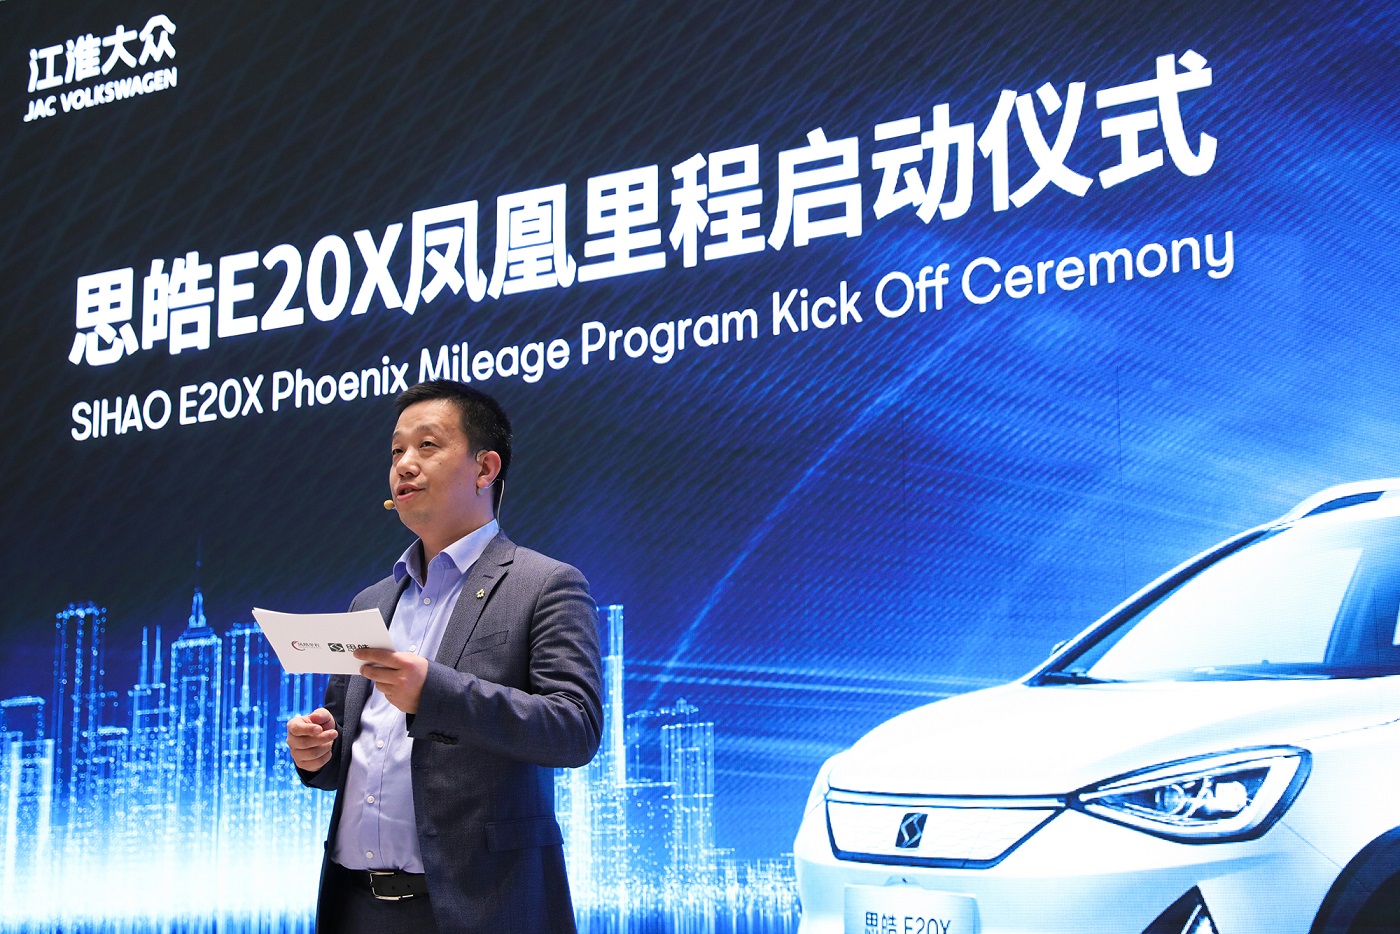 大众在华纯电动品牌思皓E20X凤凰里程项目携手星星充电在京启动